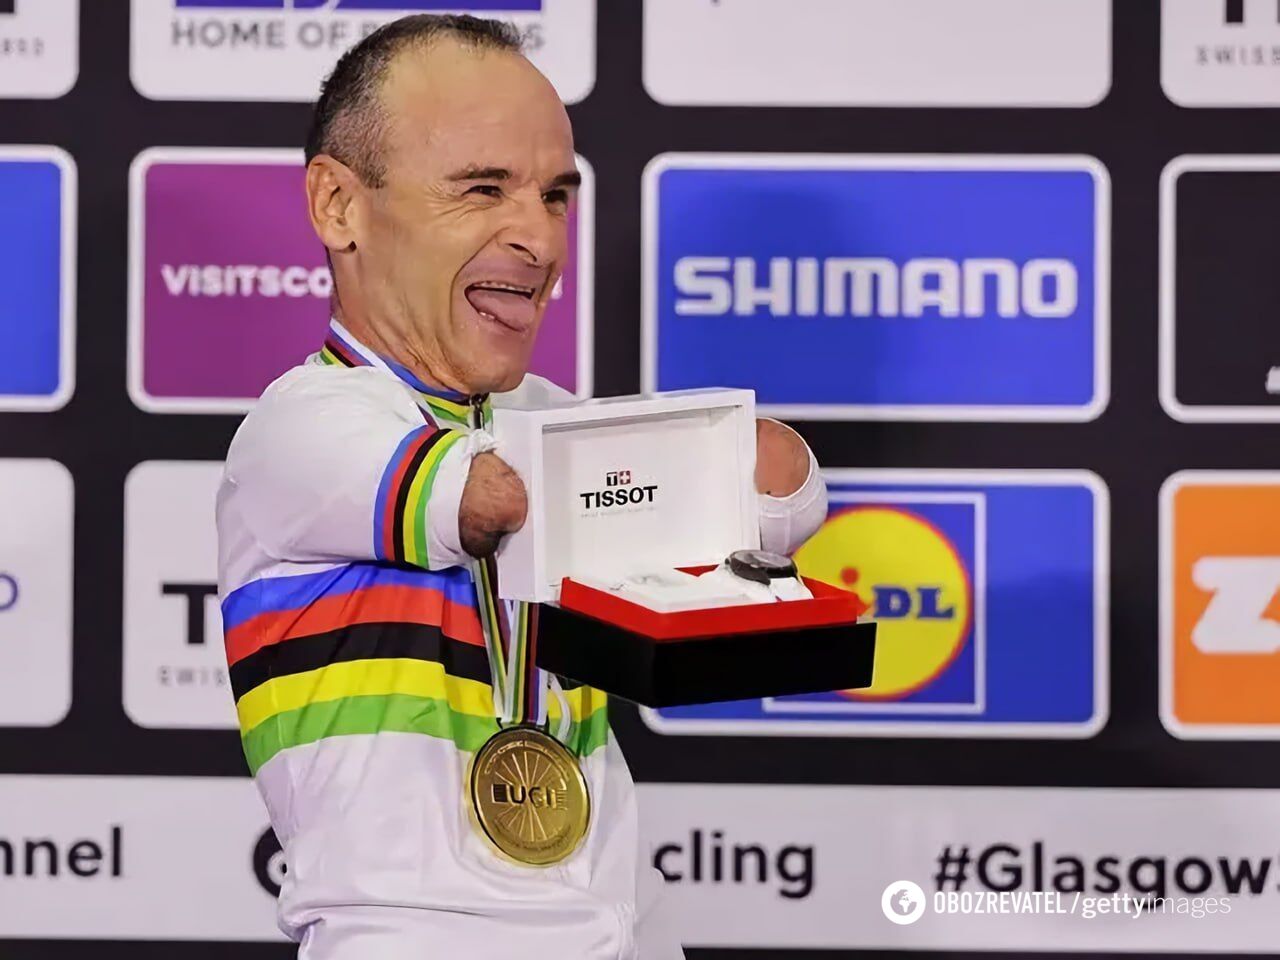 Безрукий велосипедист виграв чемпіонат світу. Його нагородили наручним годинником. Відео